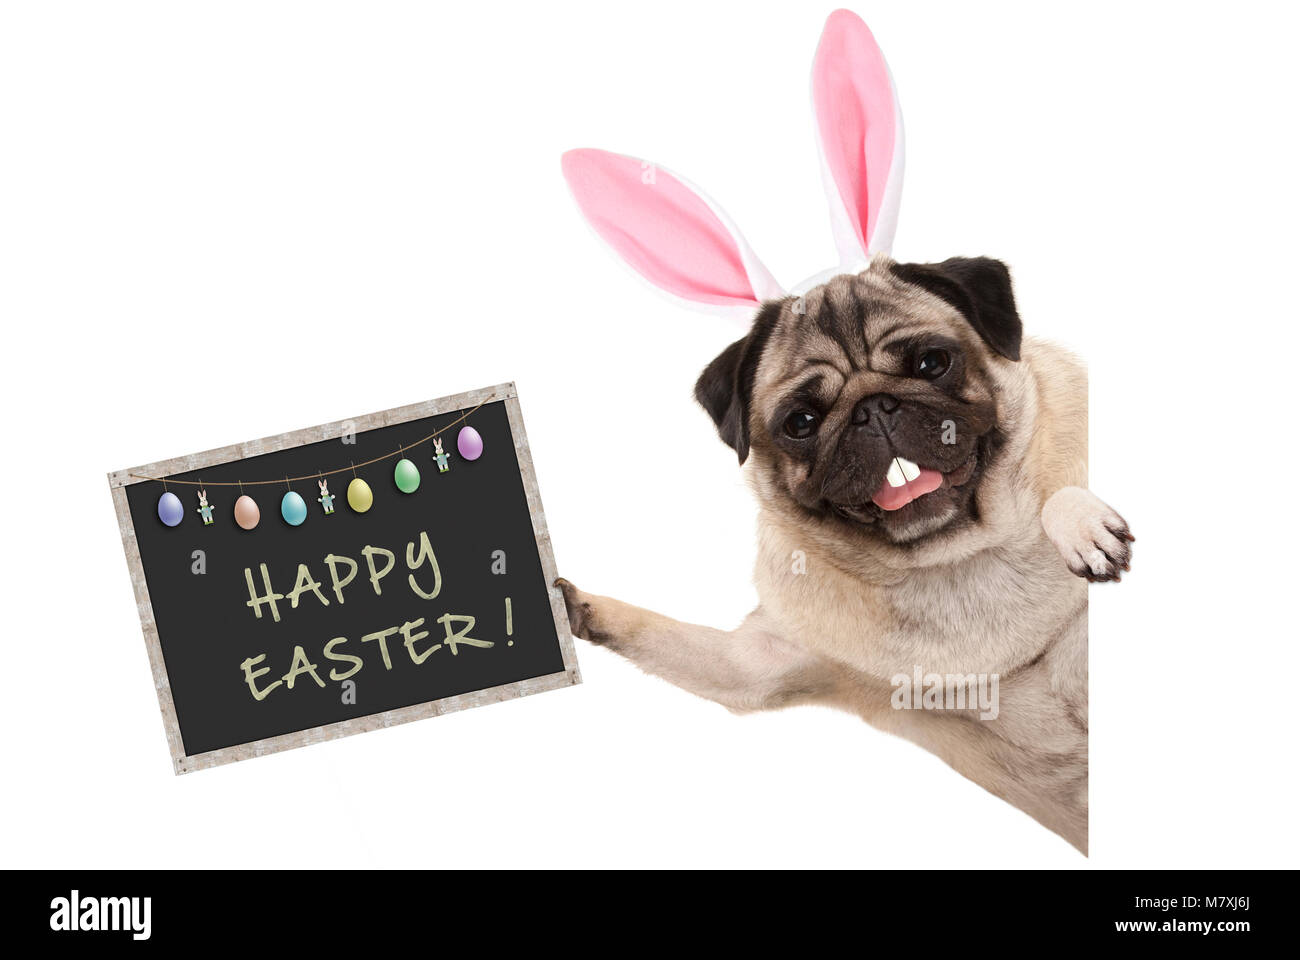 Osterhase mops Welpe Hund mit Ohren, Eier und Tafel mit Text frohe Ostern,  seitlich aus weißen Banner Stockfotografie - Alamy